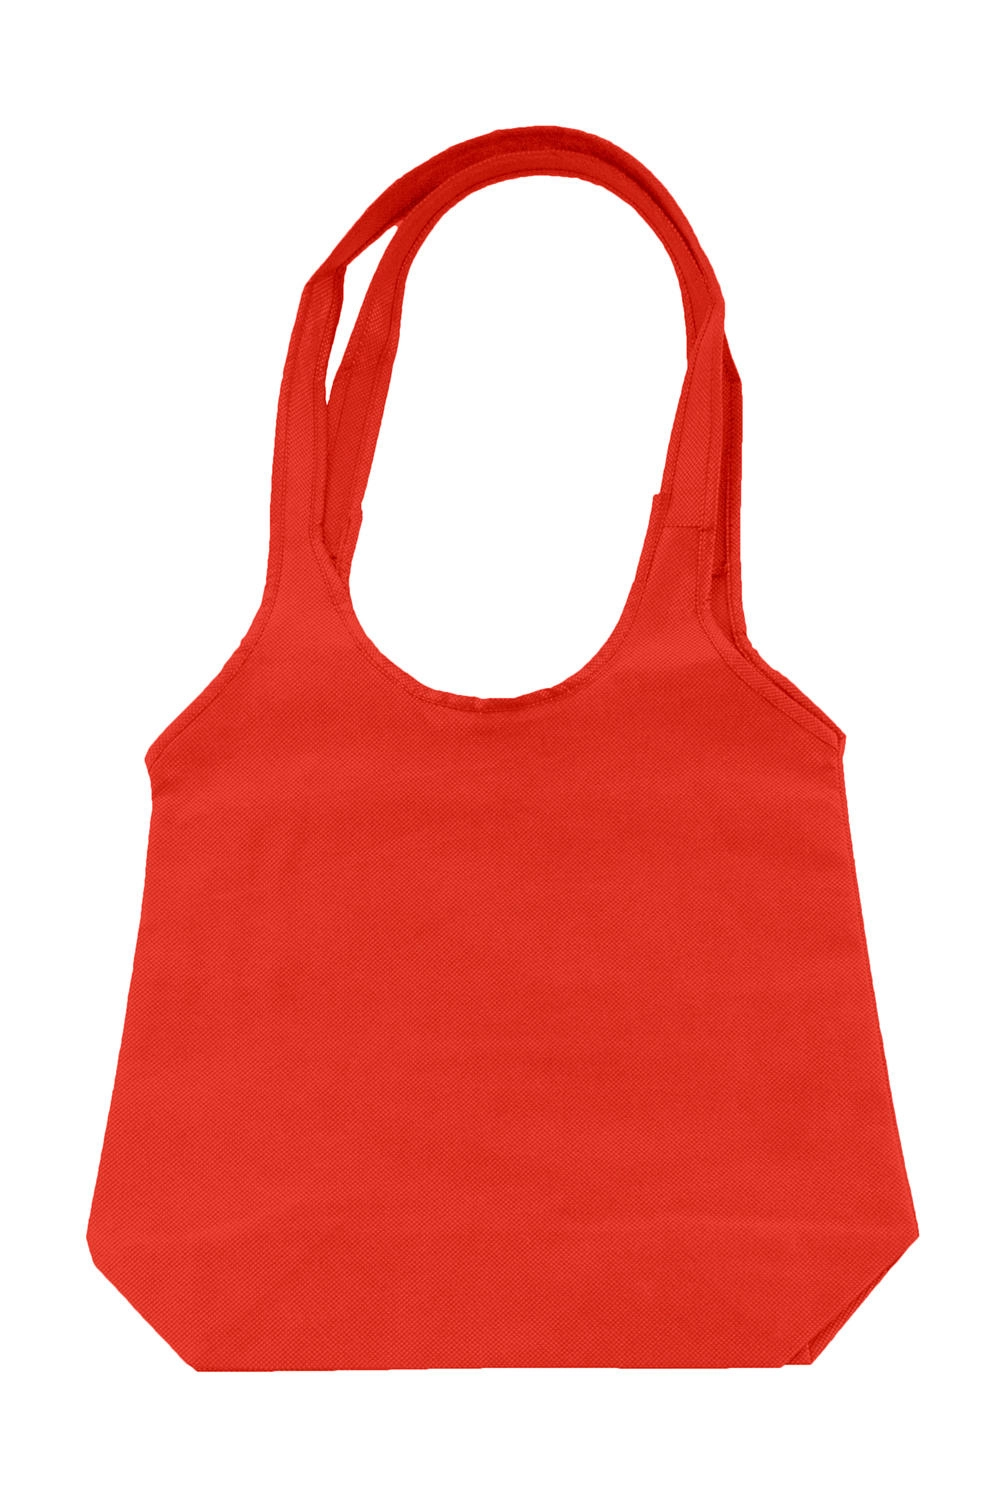 Fashion Shopper zum Besticken und Bedrucken in der Farbe Red mit Ihren Logo, Schriftzug oder Motiv.